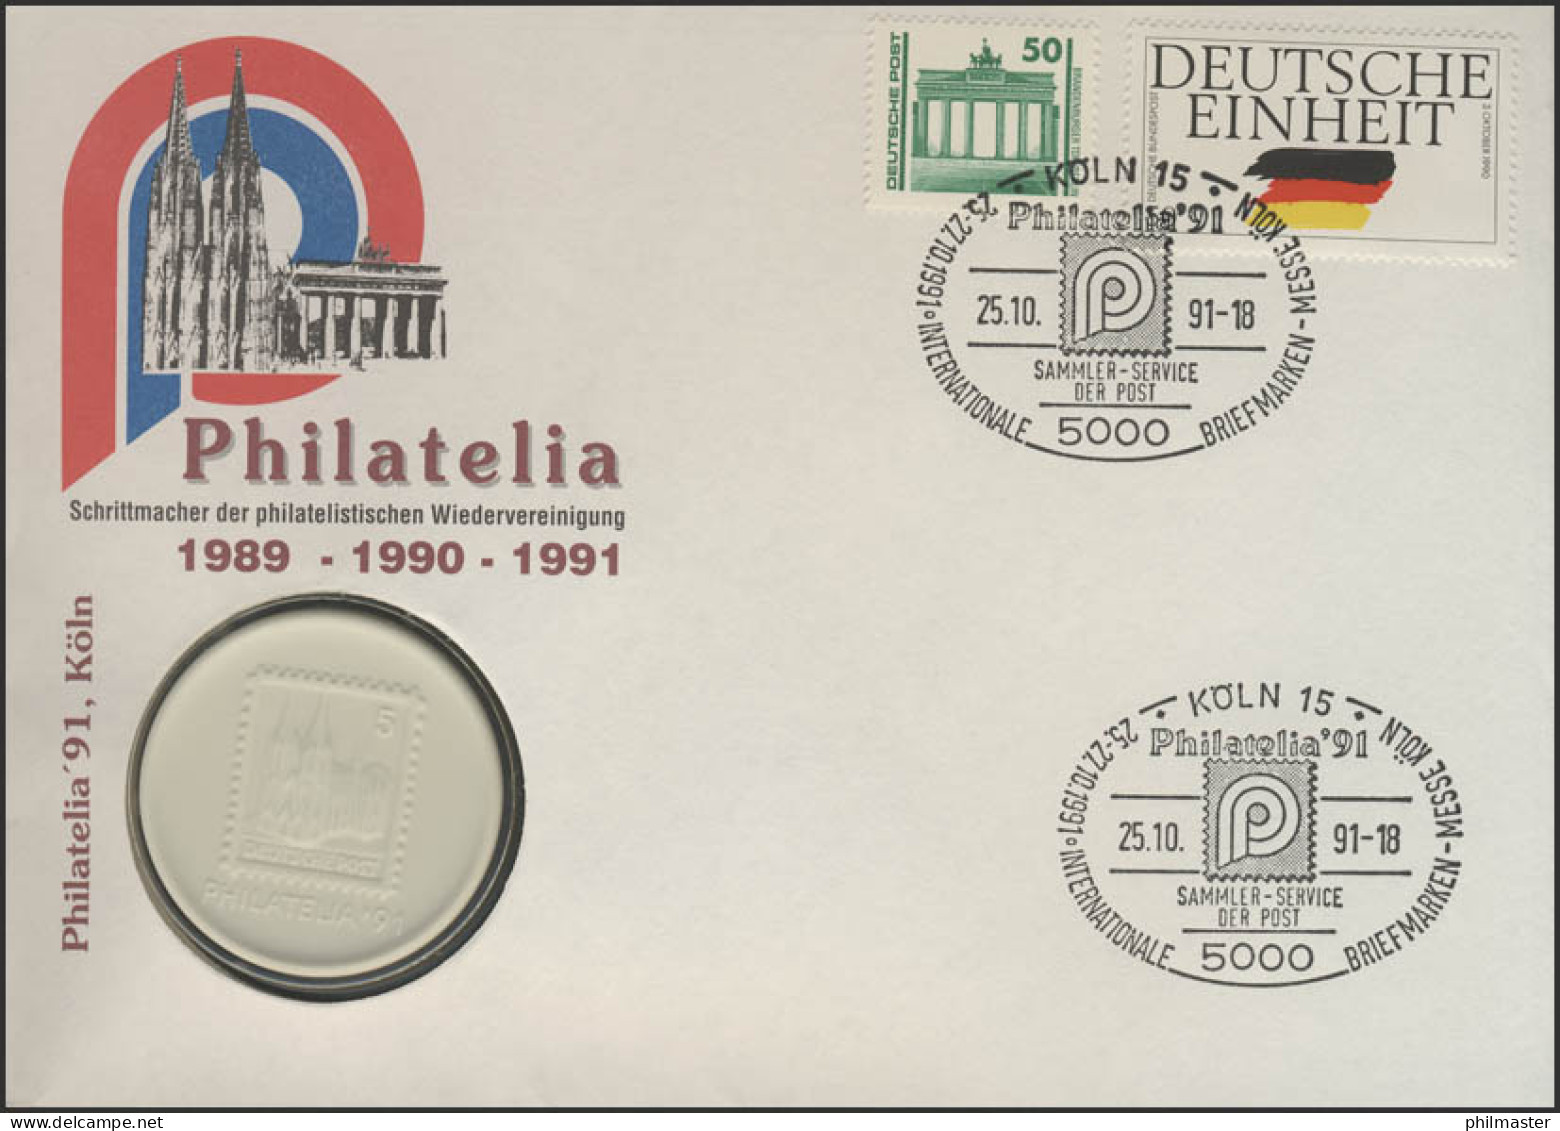 Porzellanbrief Philatelia Köln 25.10.1991 Mit Echtem Meißener Porzellan - Porselein